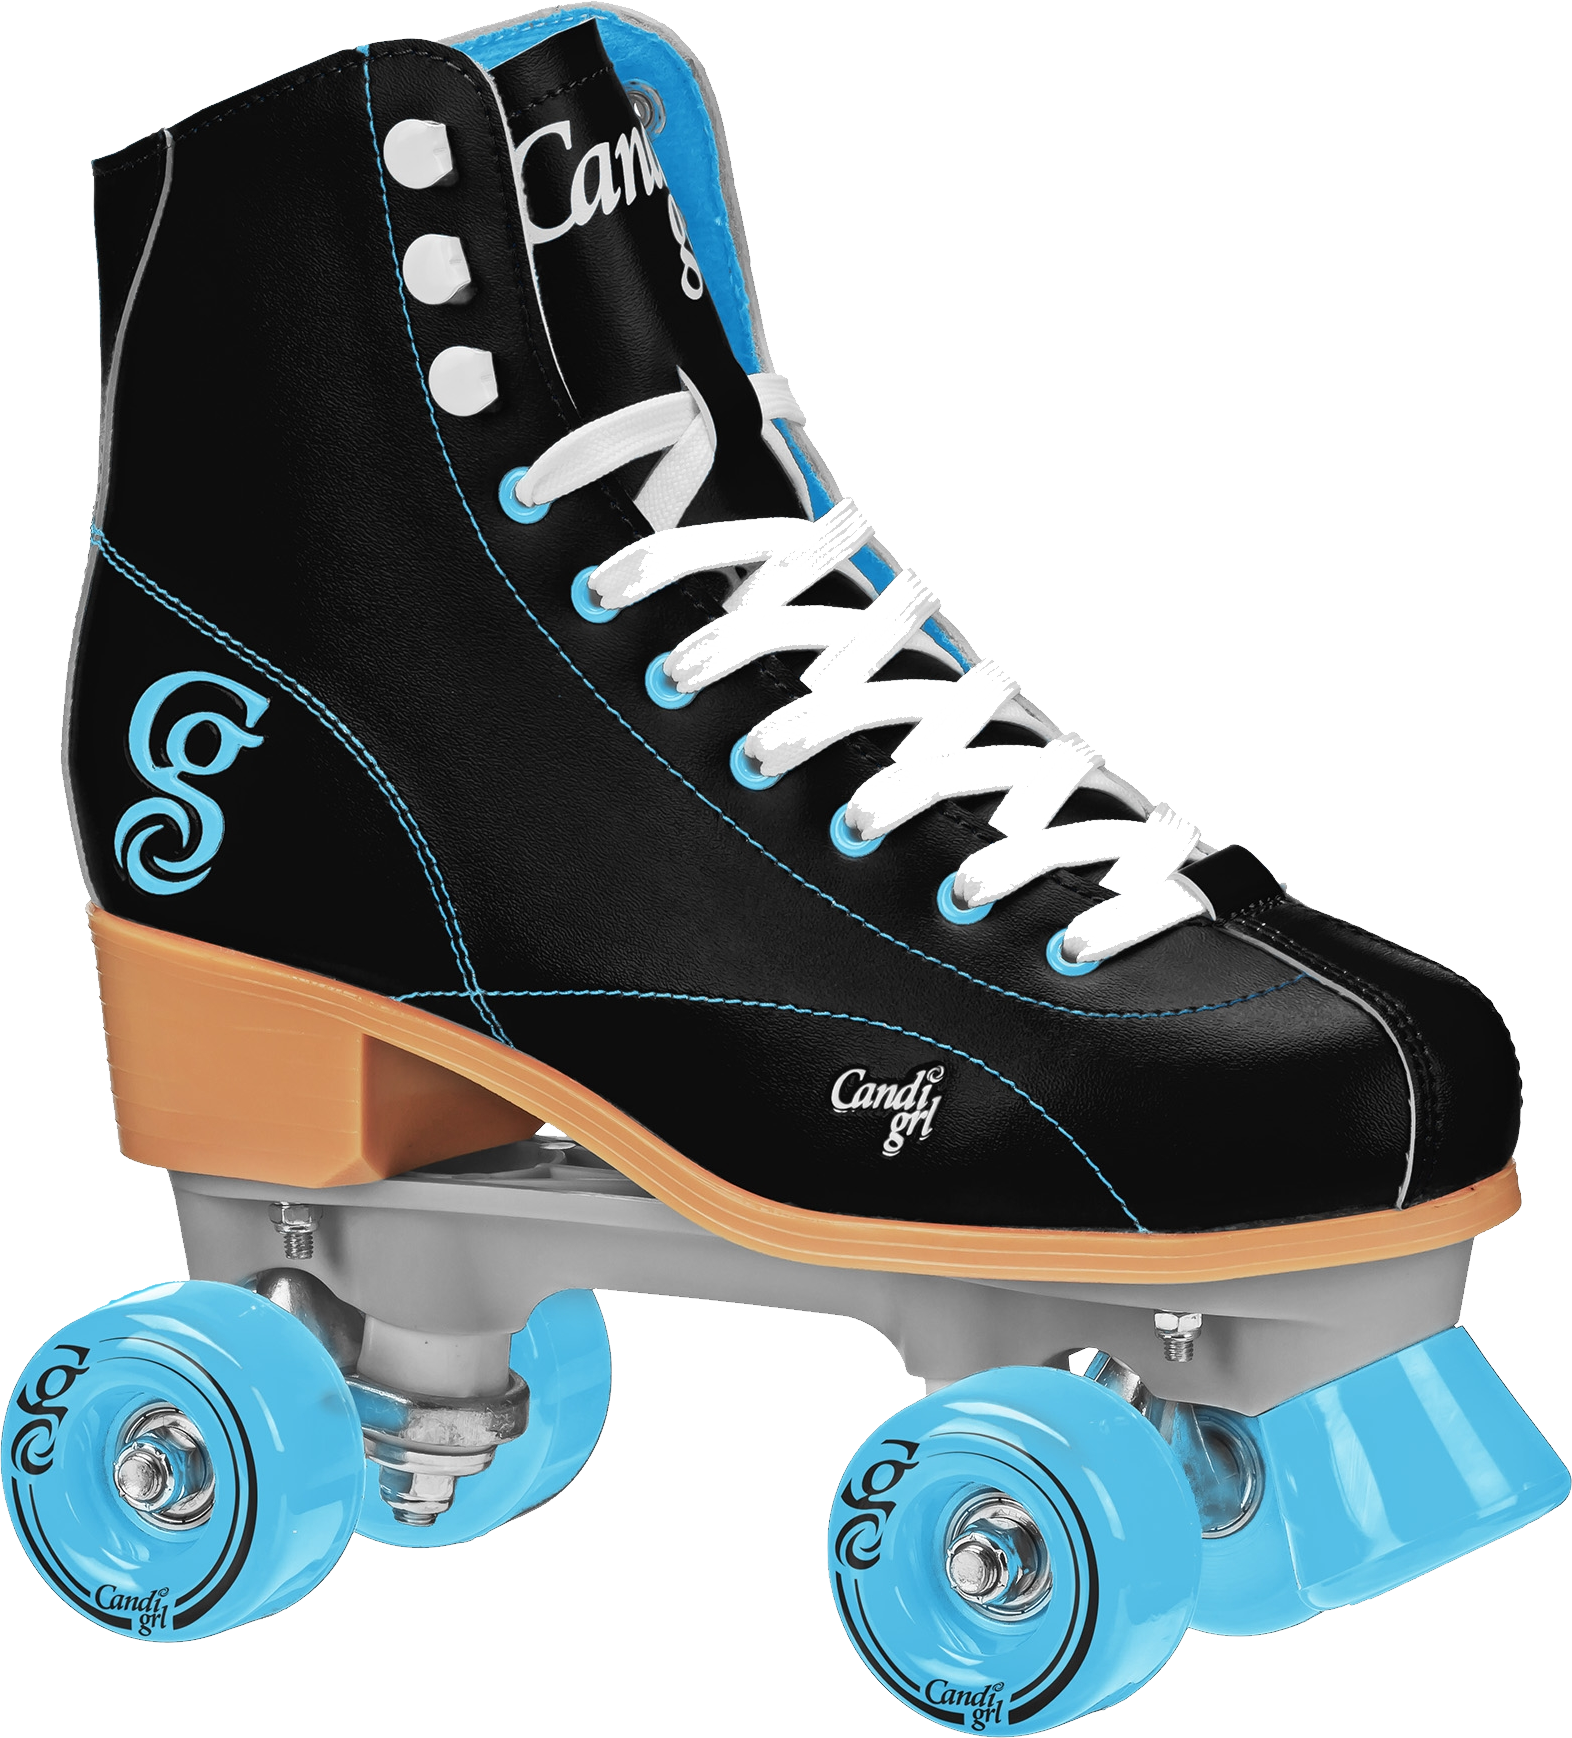 Wheel clipart roller skate wheel. Skates png 